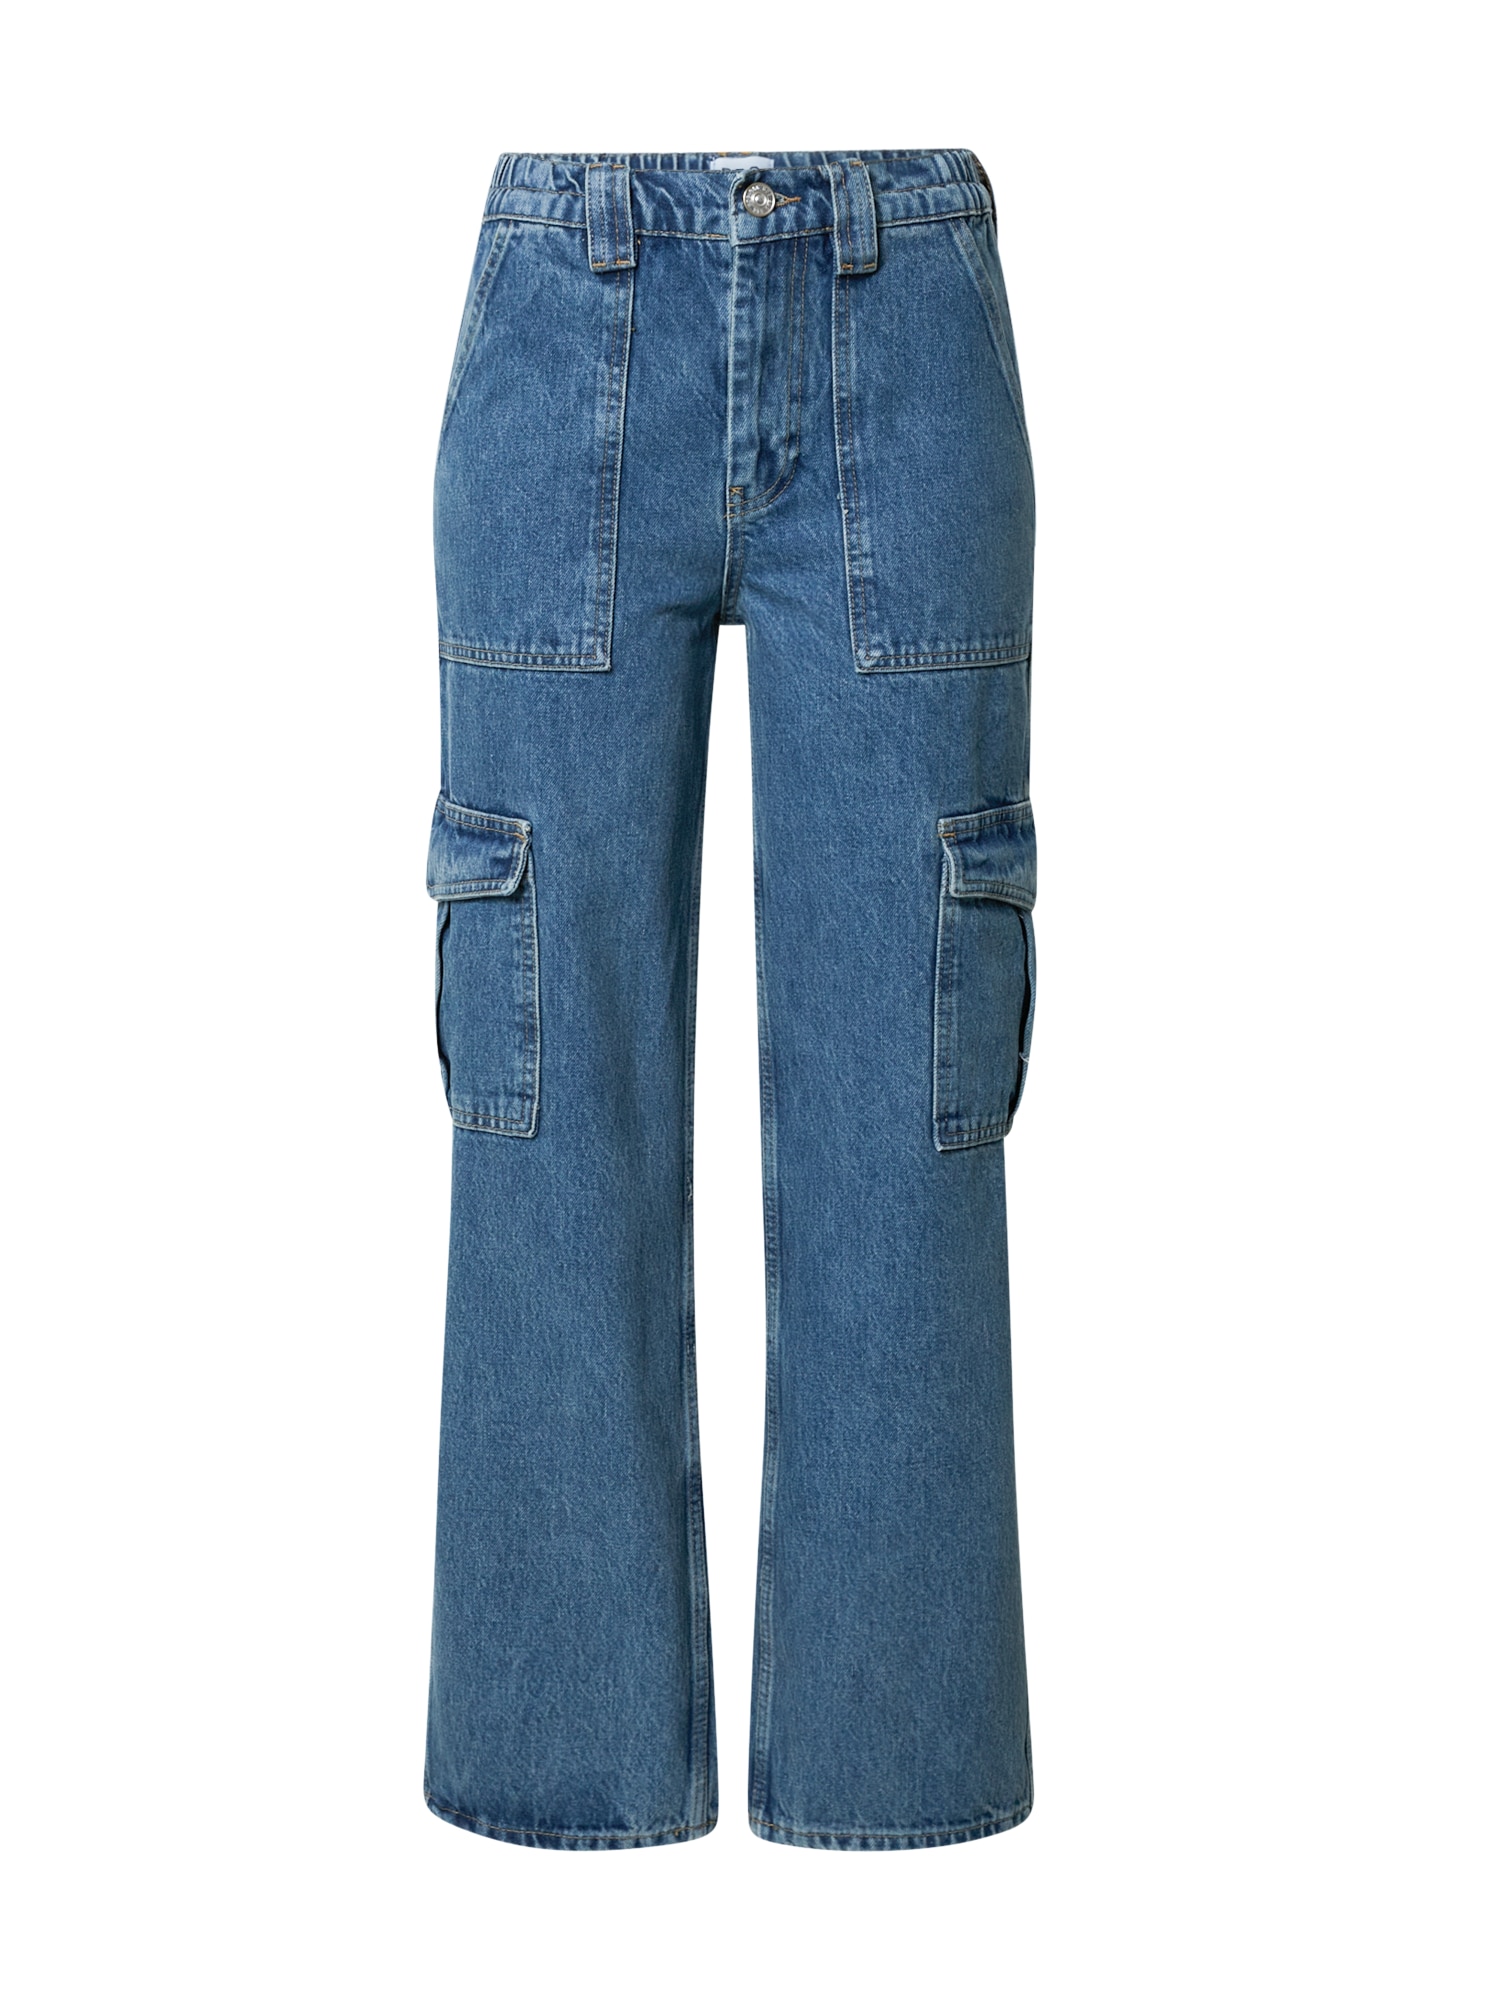 BDG Urban Outfitters Darbinio stiliaus džinsai tamsiai (džinso) mėlyna